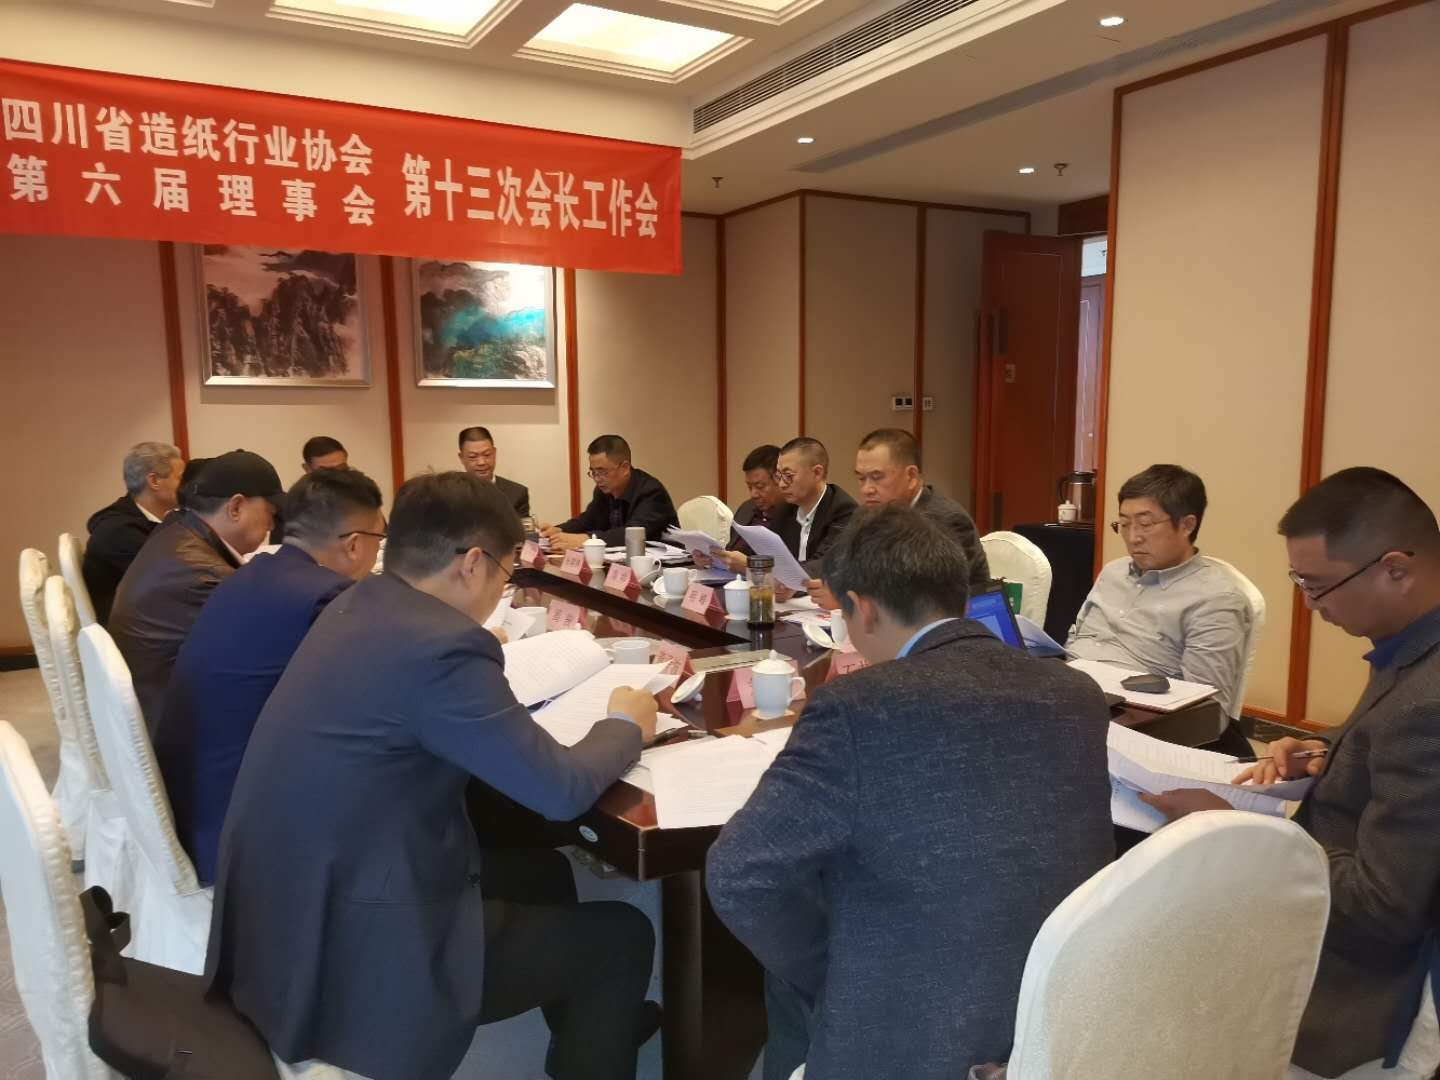 四川省造纸行业协会第六届理事会第十三次会长工作会会议现场